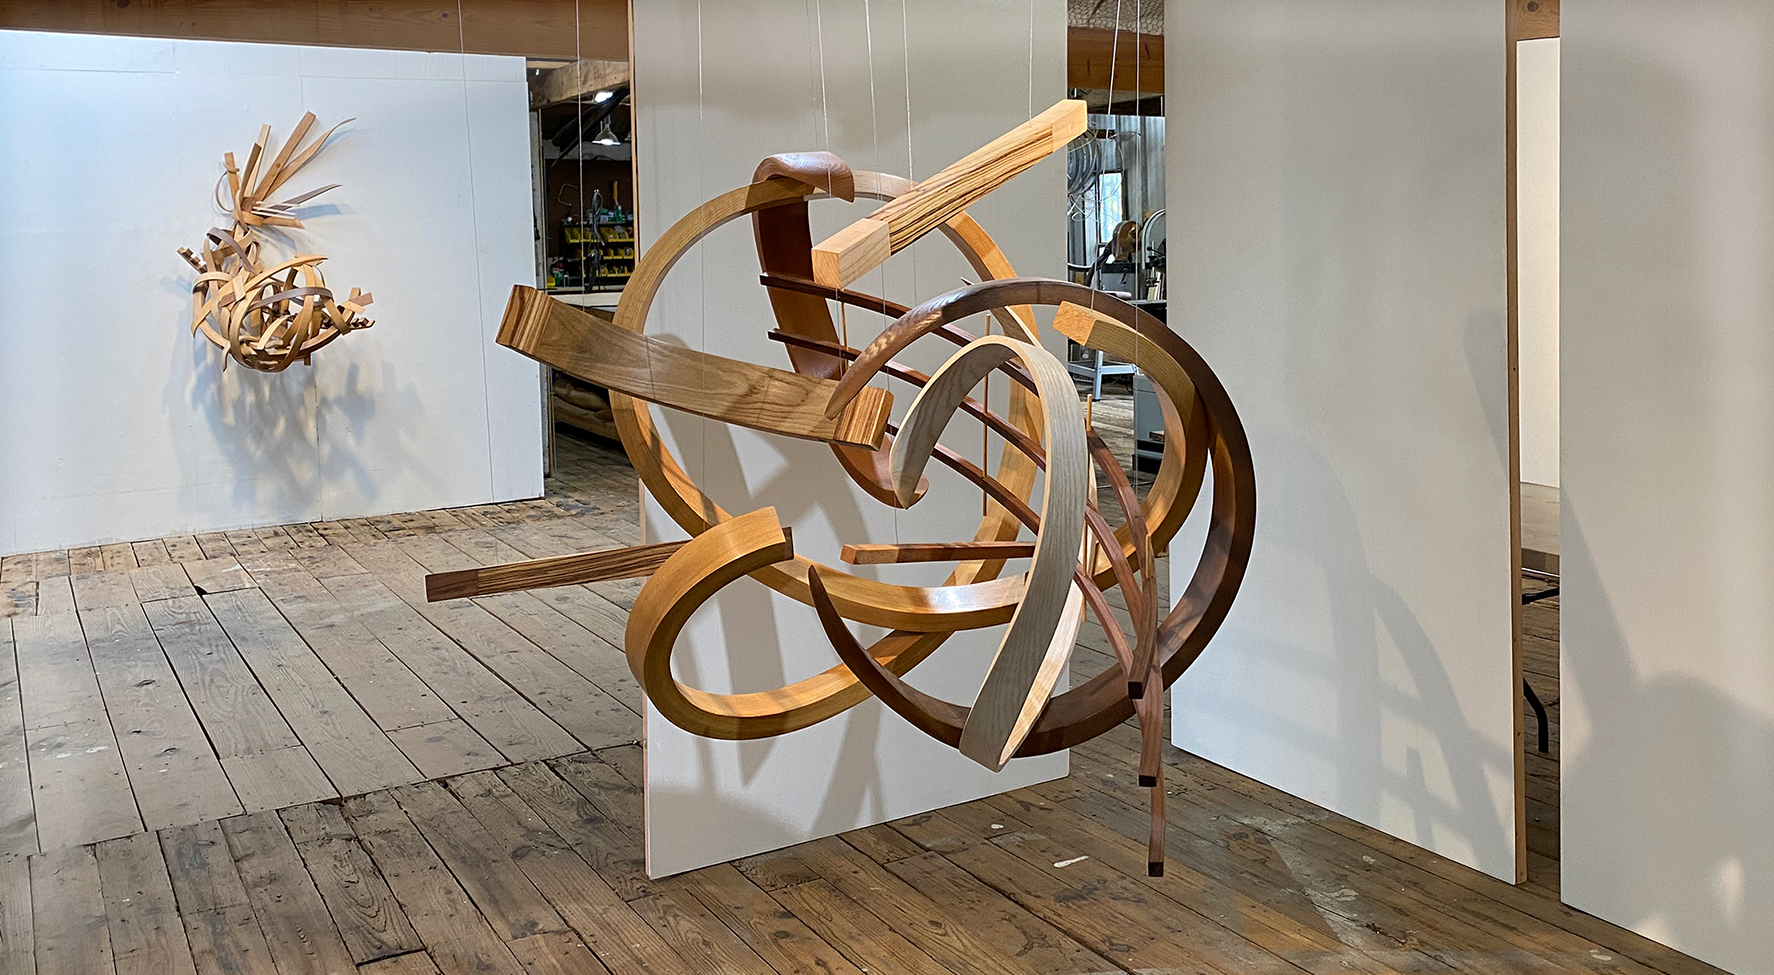 Rick Maxwell bent wood sculpture in his studio